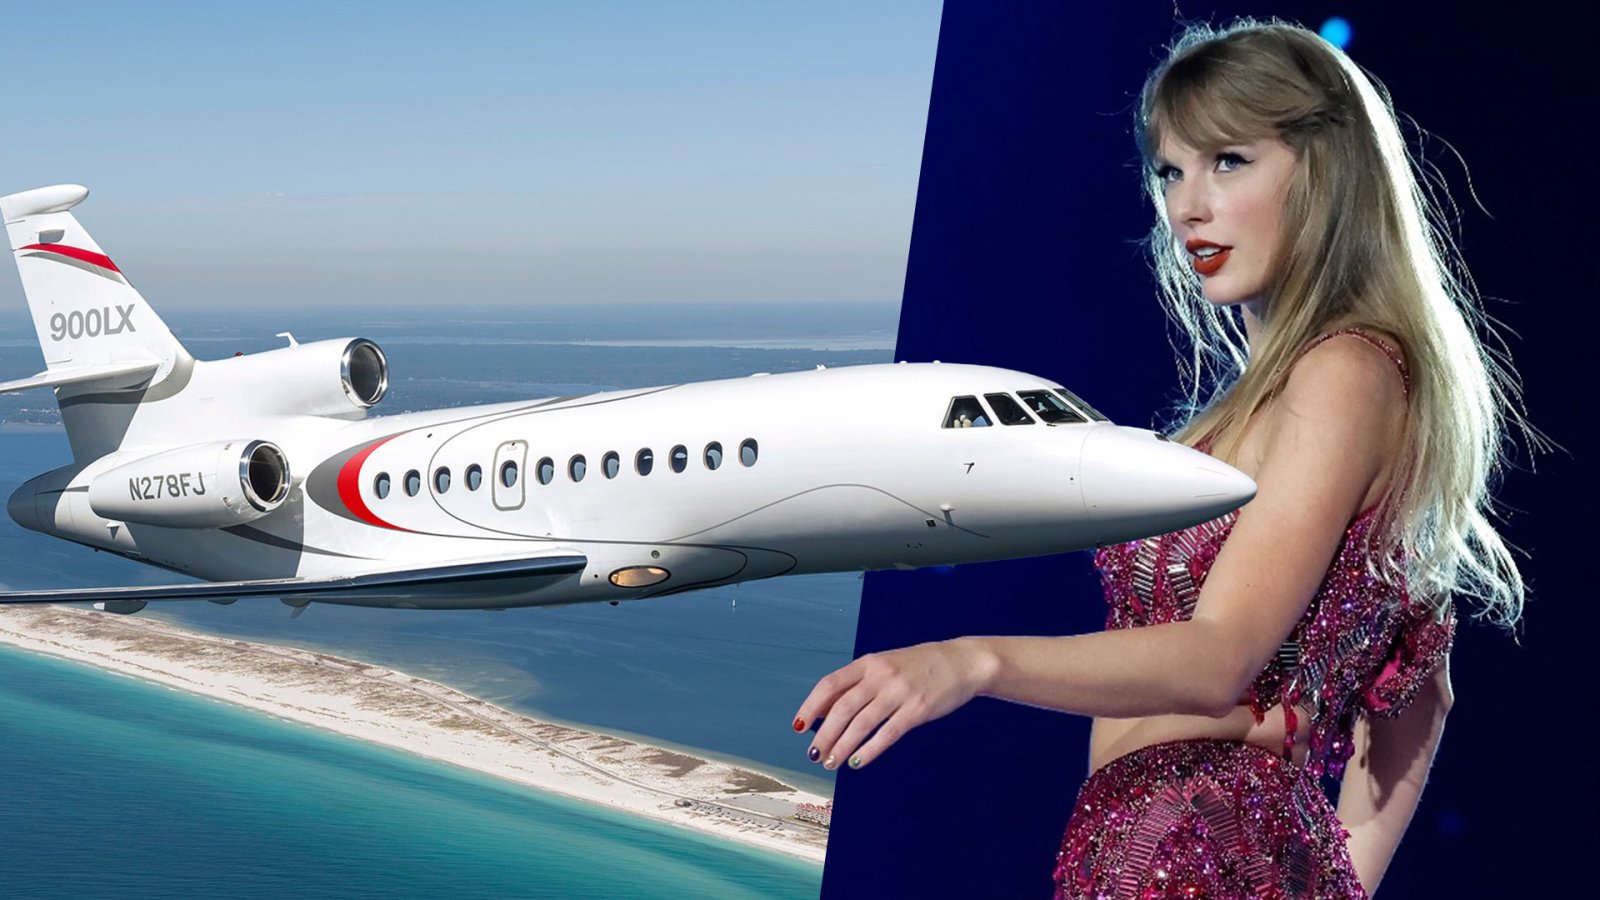 ฉ่ำ! Taylor Swift ใช้เครื่องบินเจ็ตส่วนตัวบินหา Travis Kelce 3 เดือน ปล่อยคาร์บอนเท่าบ้าน 17 หลังใน 1 ปี!